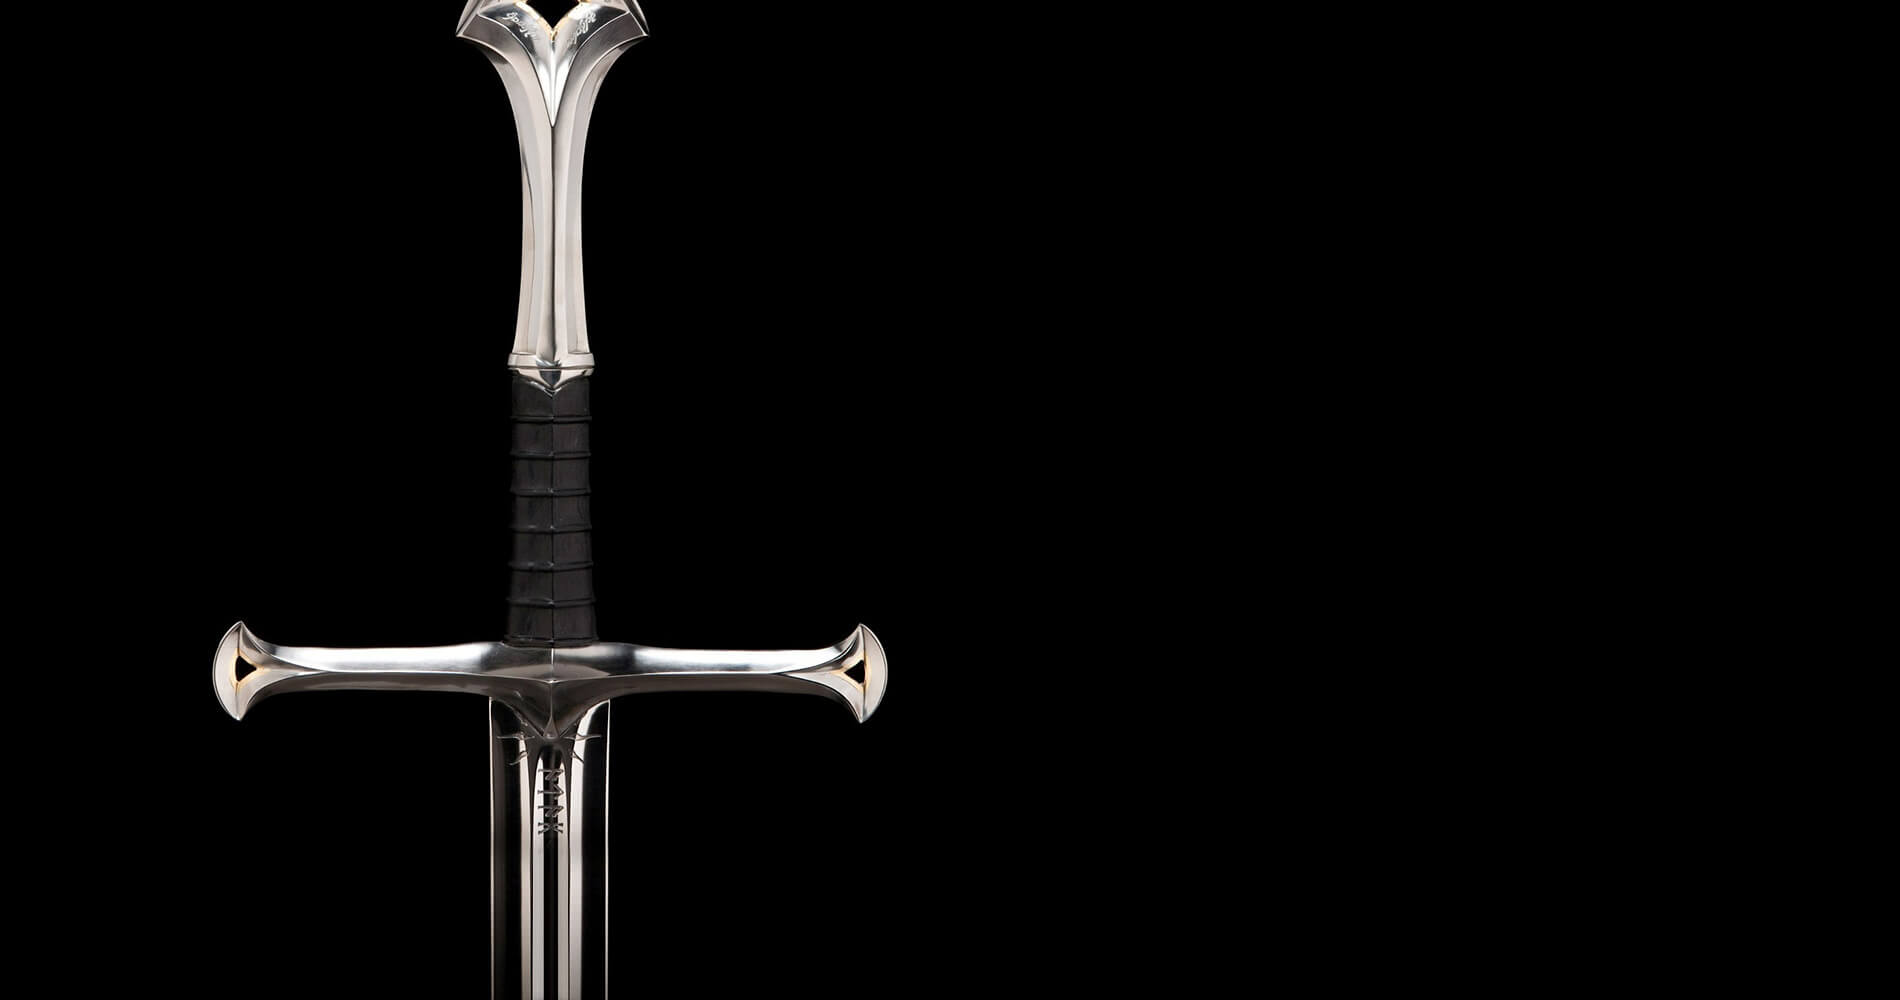 Famous Swords